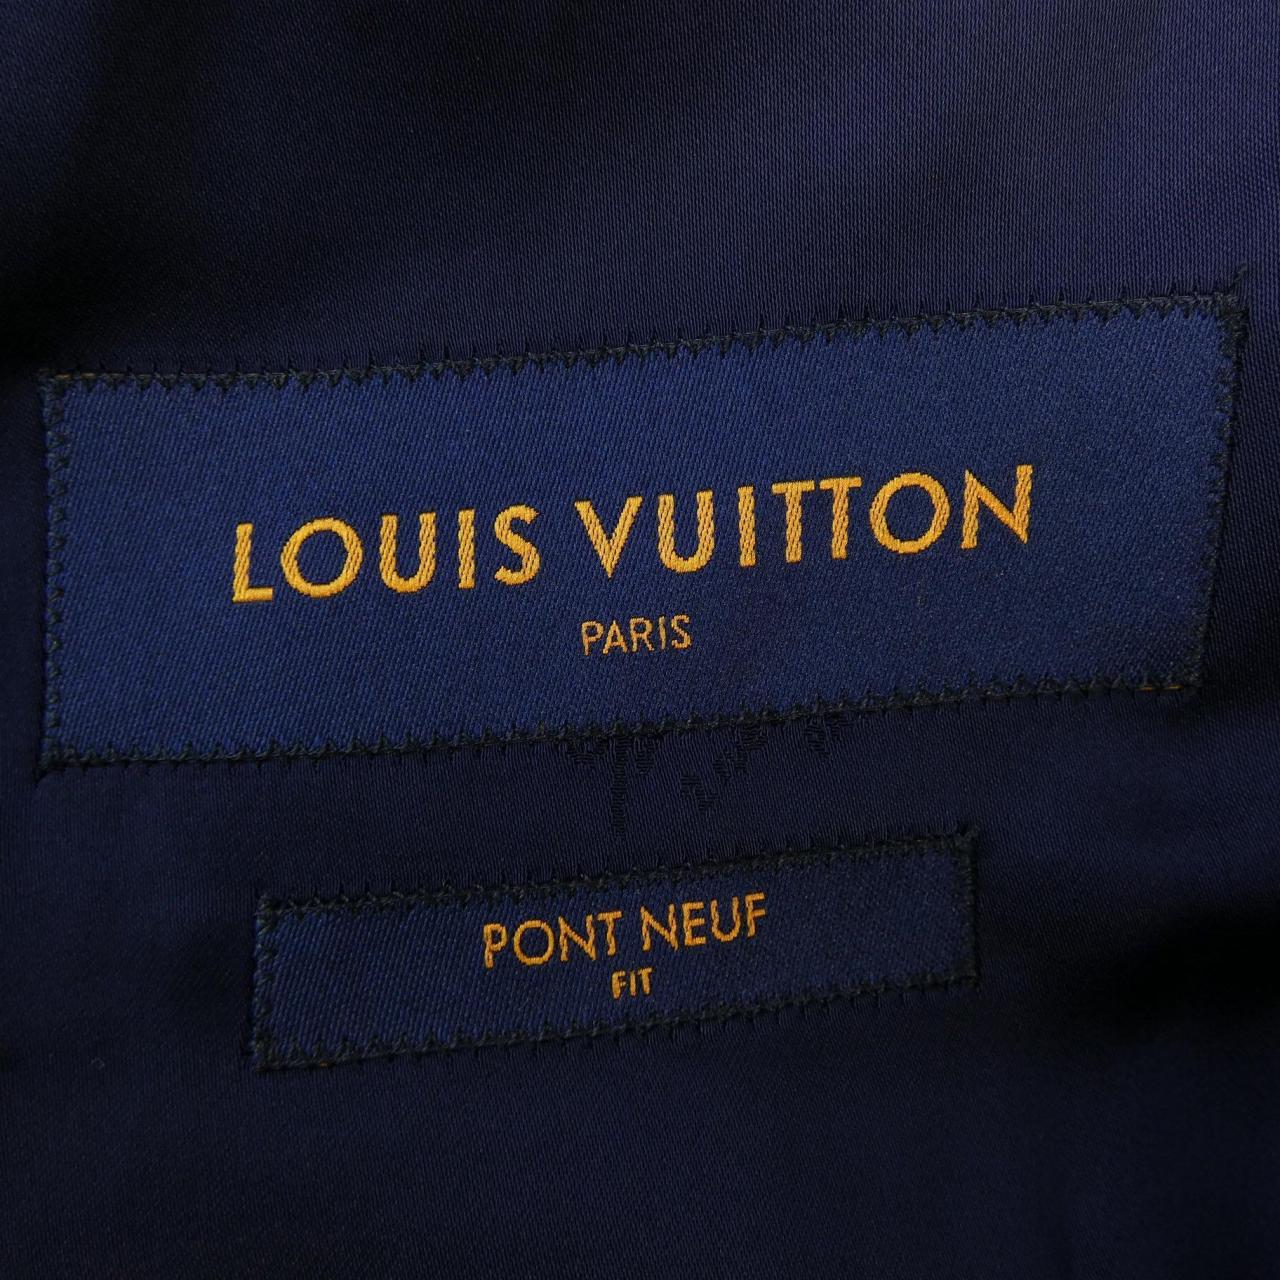 LOUIS LOUIS VUITTON suit